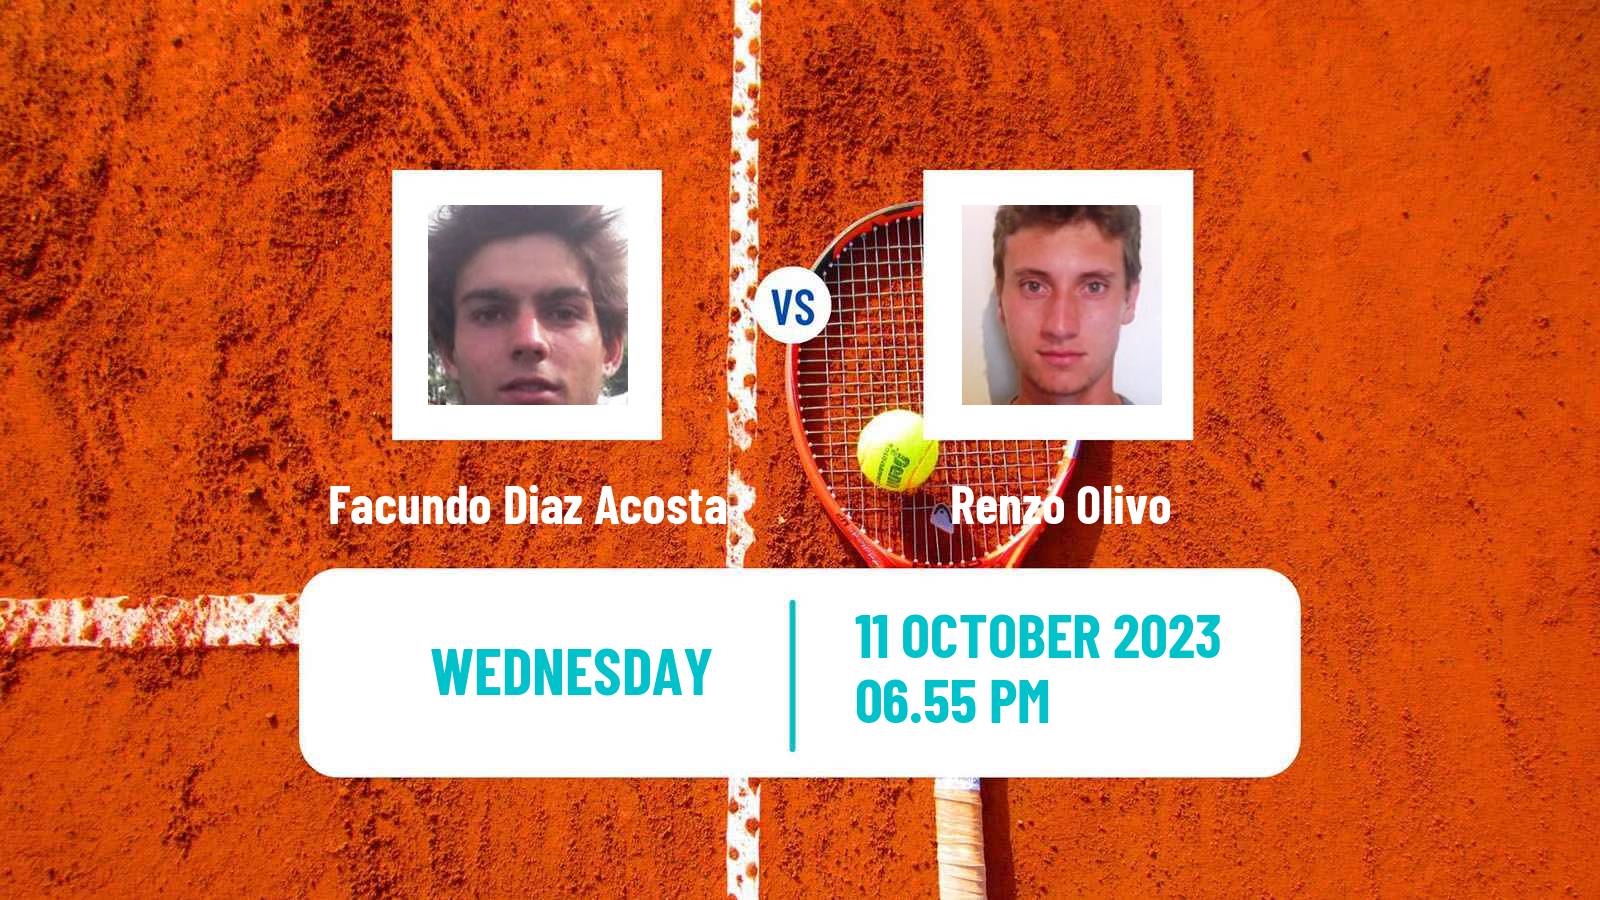 Tennis Buenos Aires 2 Challenger Men Facundo Diaz Acosta - Renzo Olivo